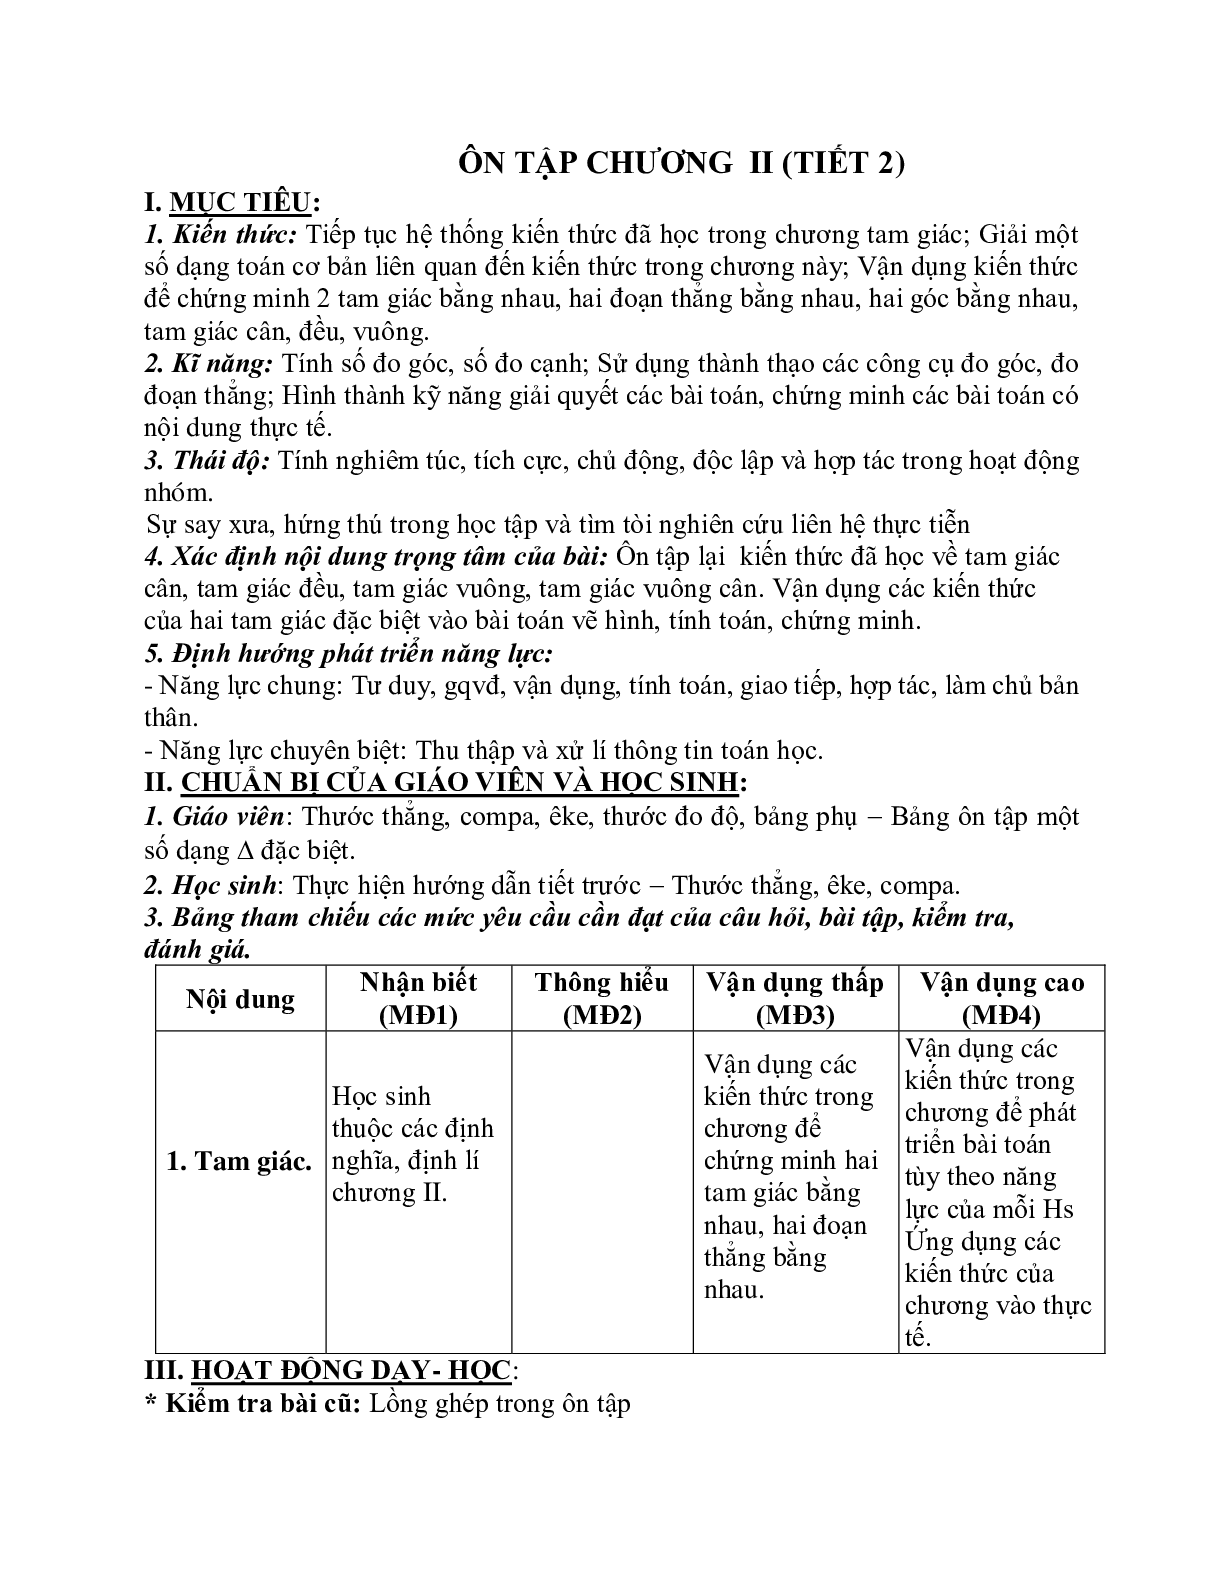 Giáo án Toán học 7: Ôn tập chương 2 (tiết 2) hay nhất (trang 1)